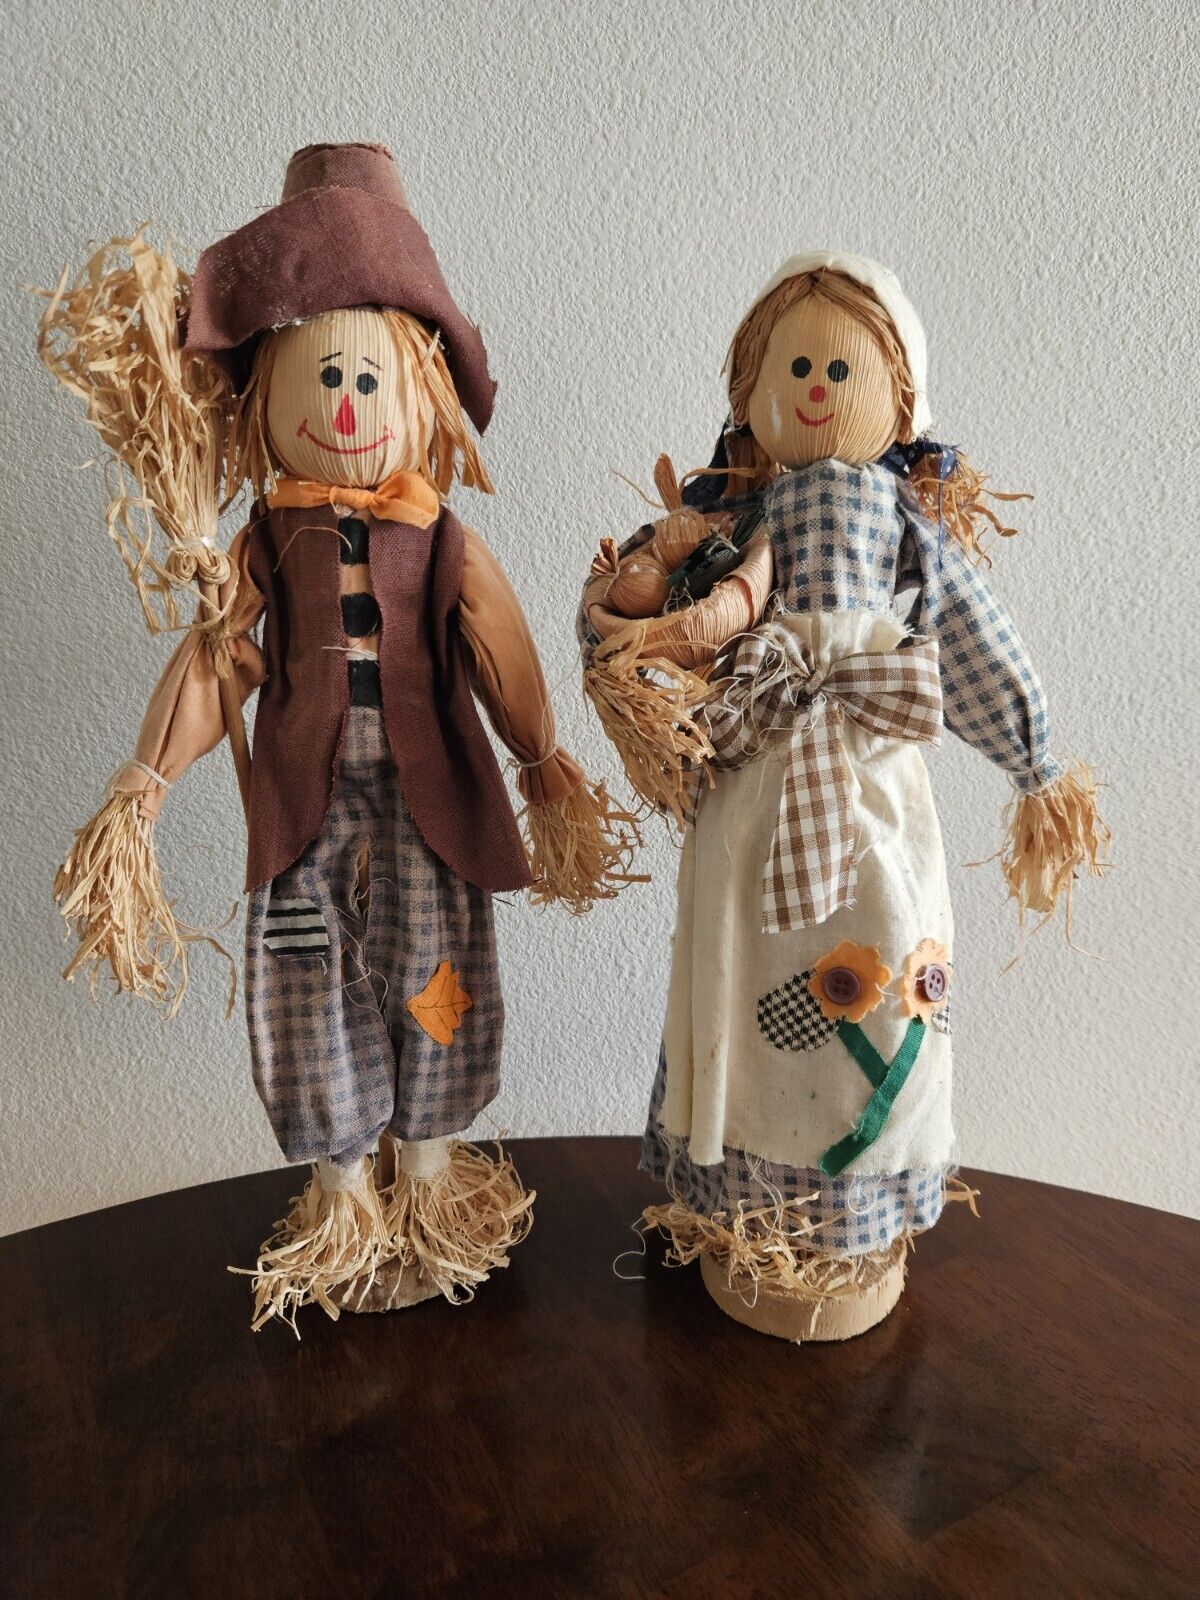 Vintage Scarecrow Handmade Figures For Halloween Used Indoor Or Outdoor